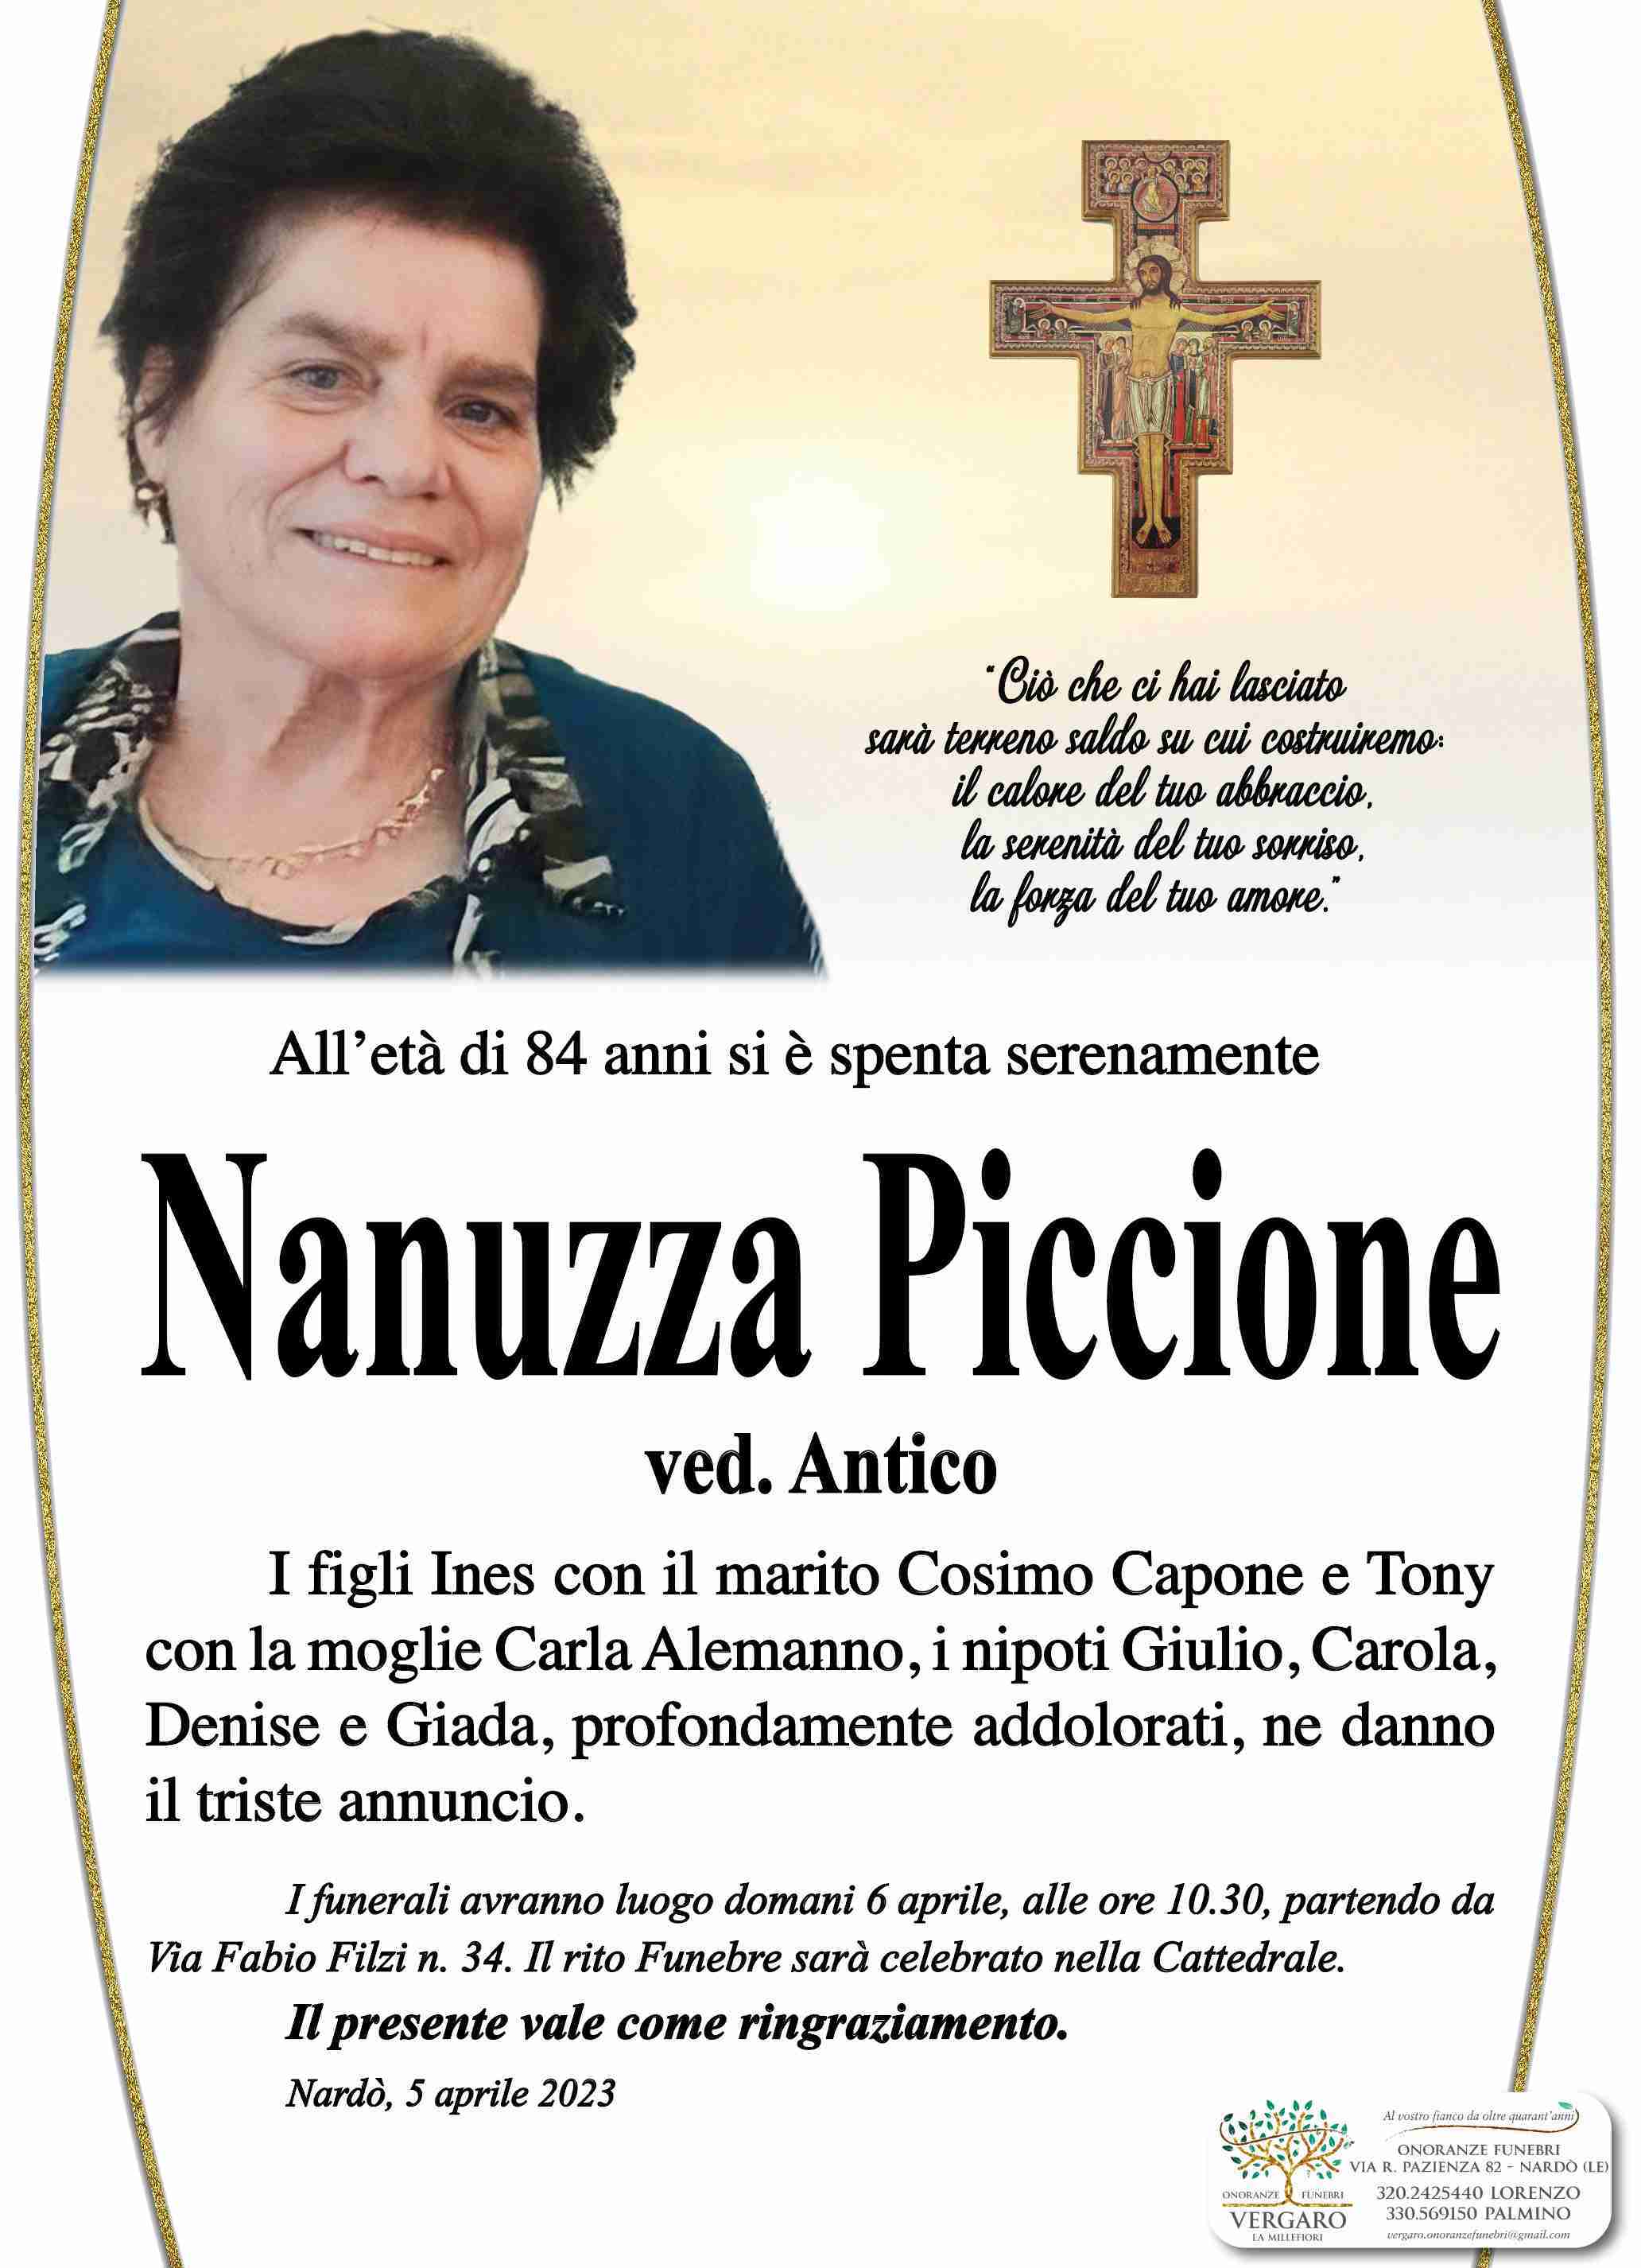 Nanuzza Piccione